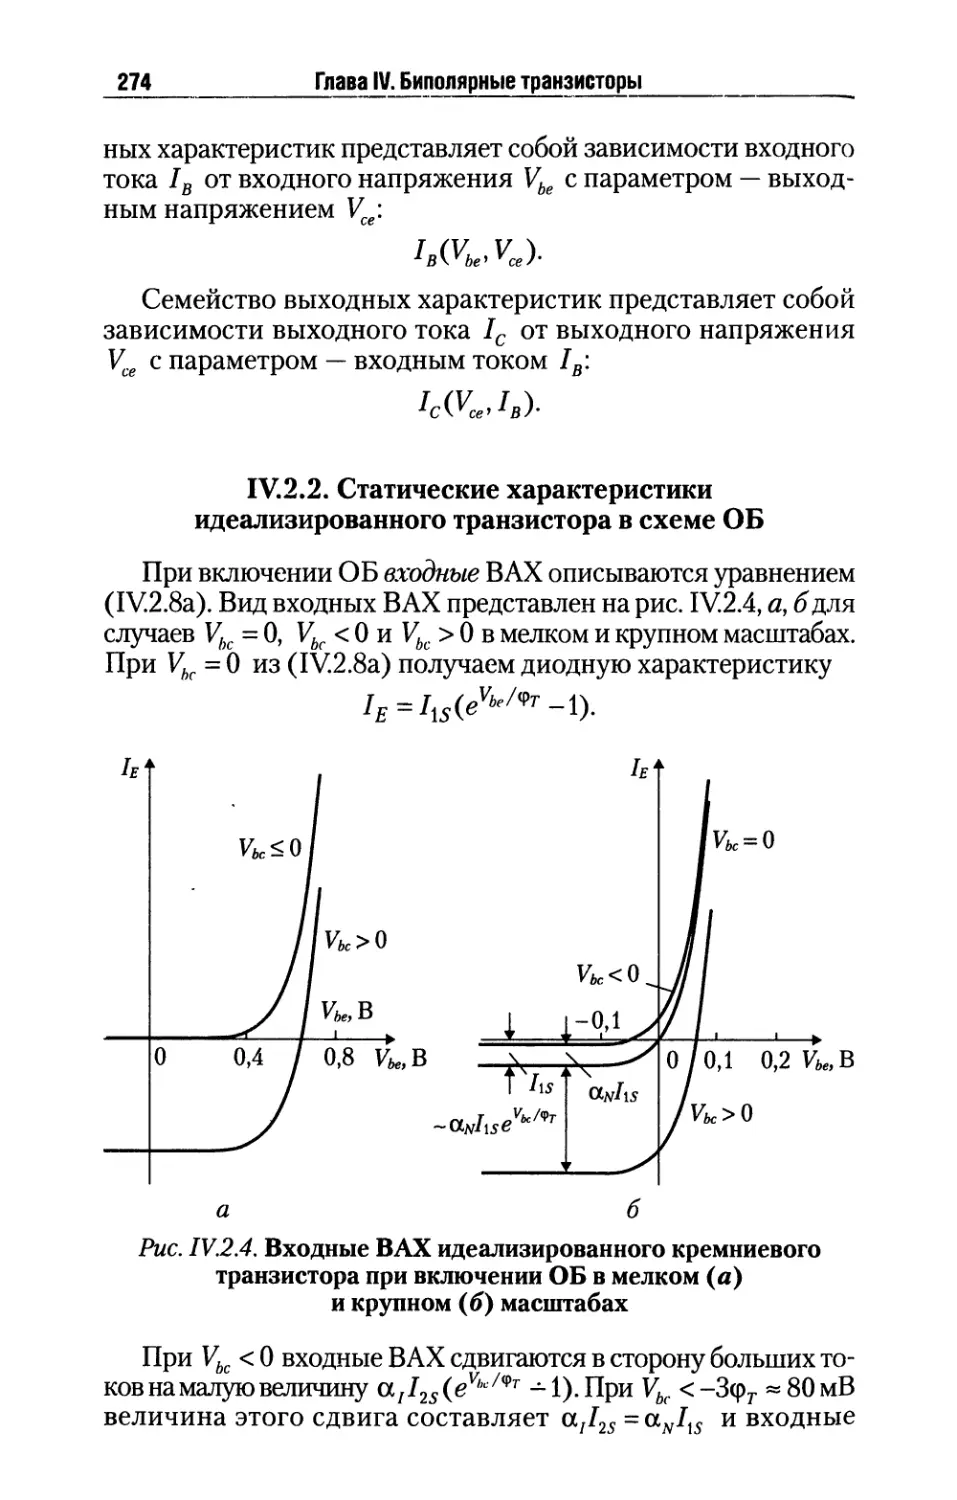 IV.2.2. Статические характеристики идеализированного транзистора в схеме ОБ